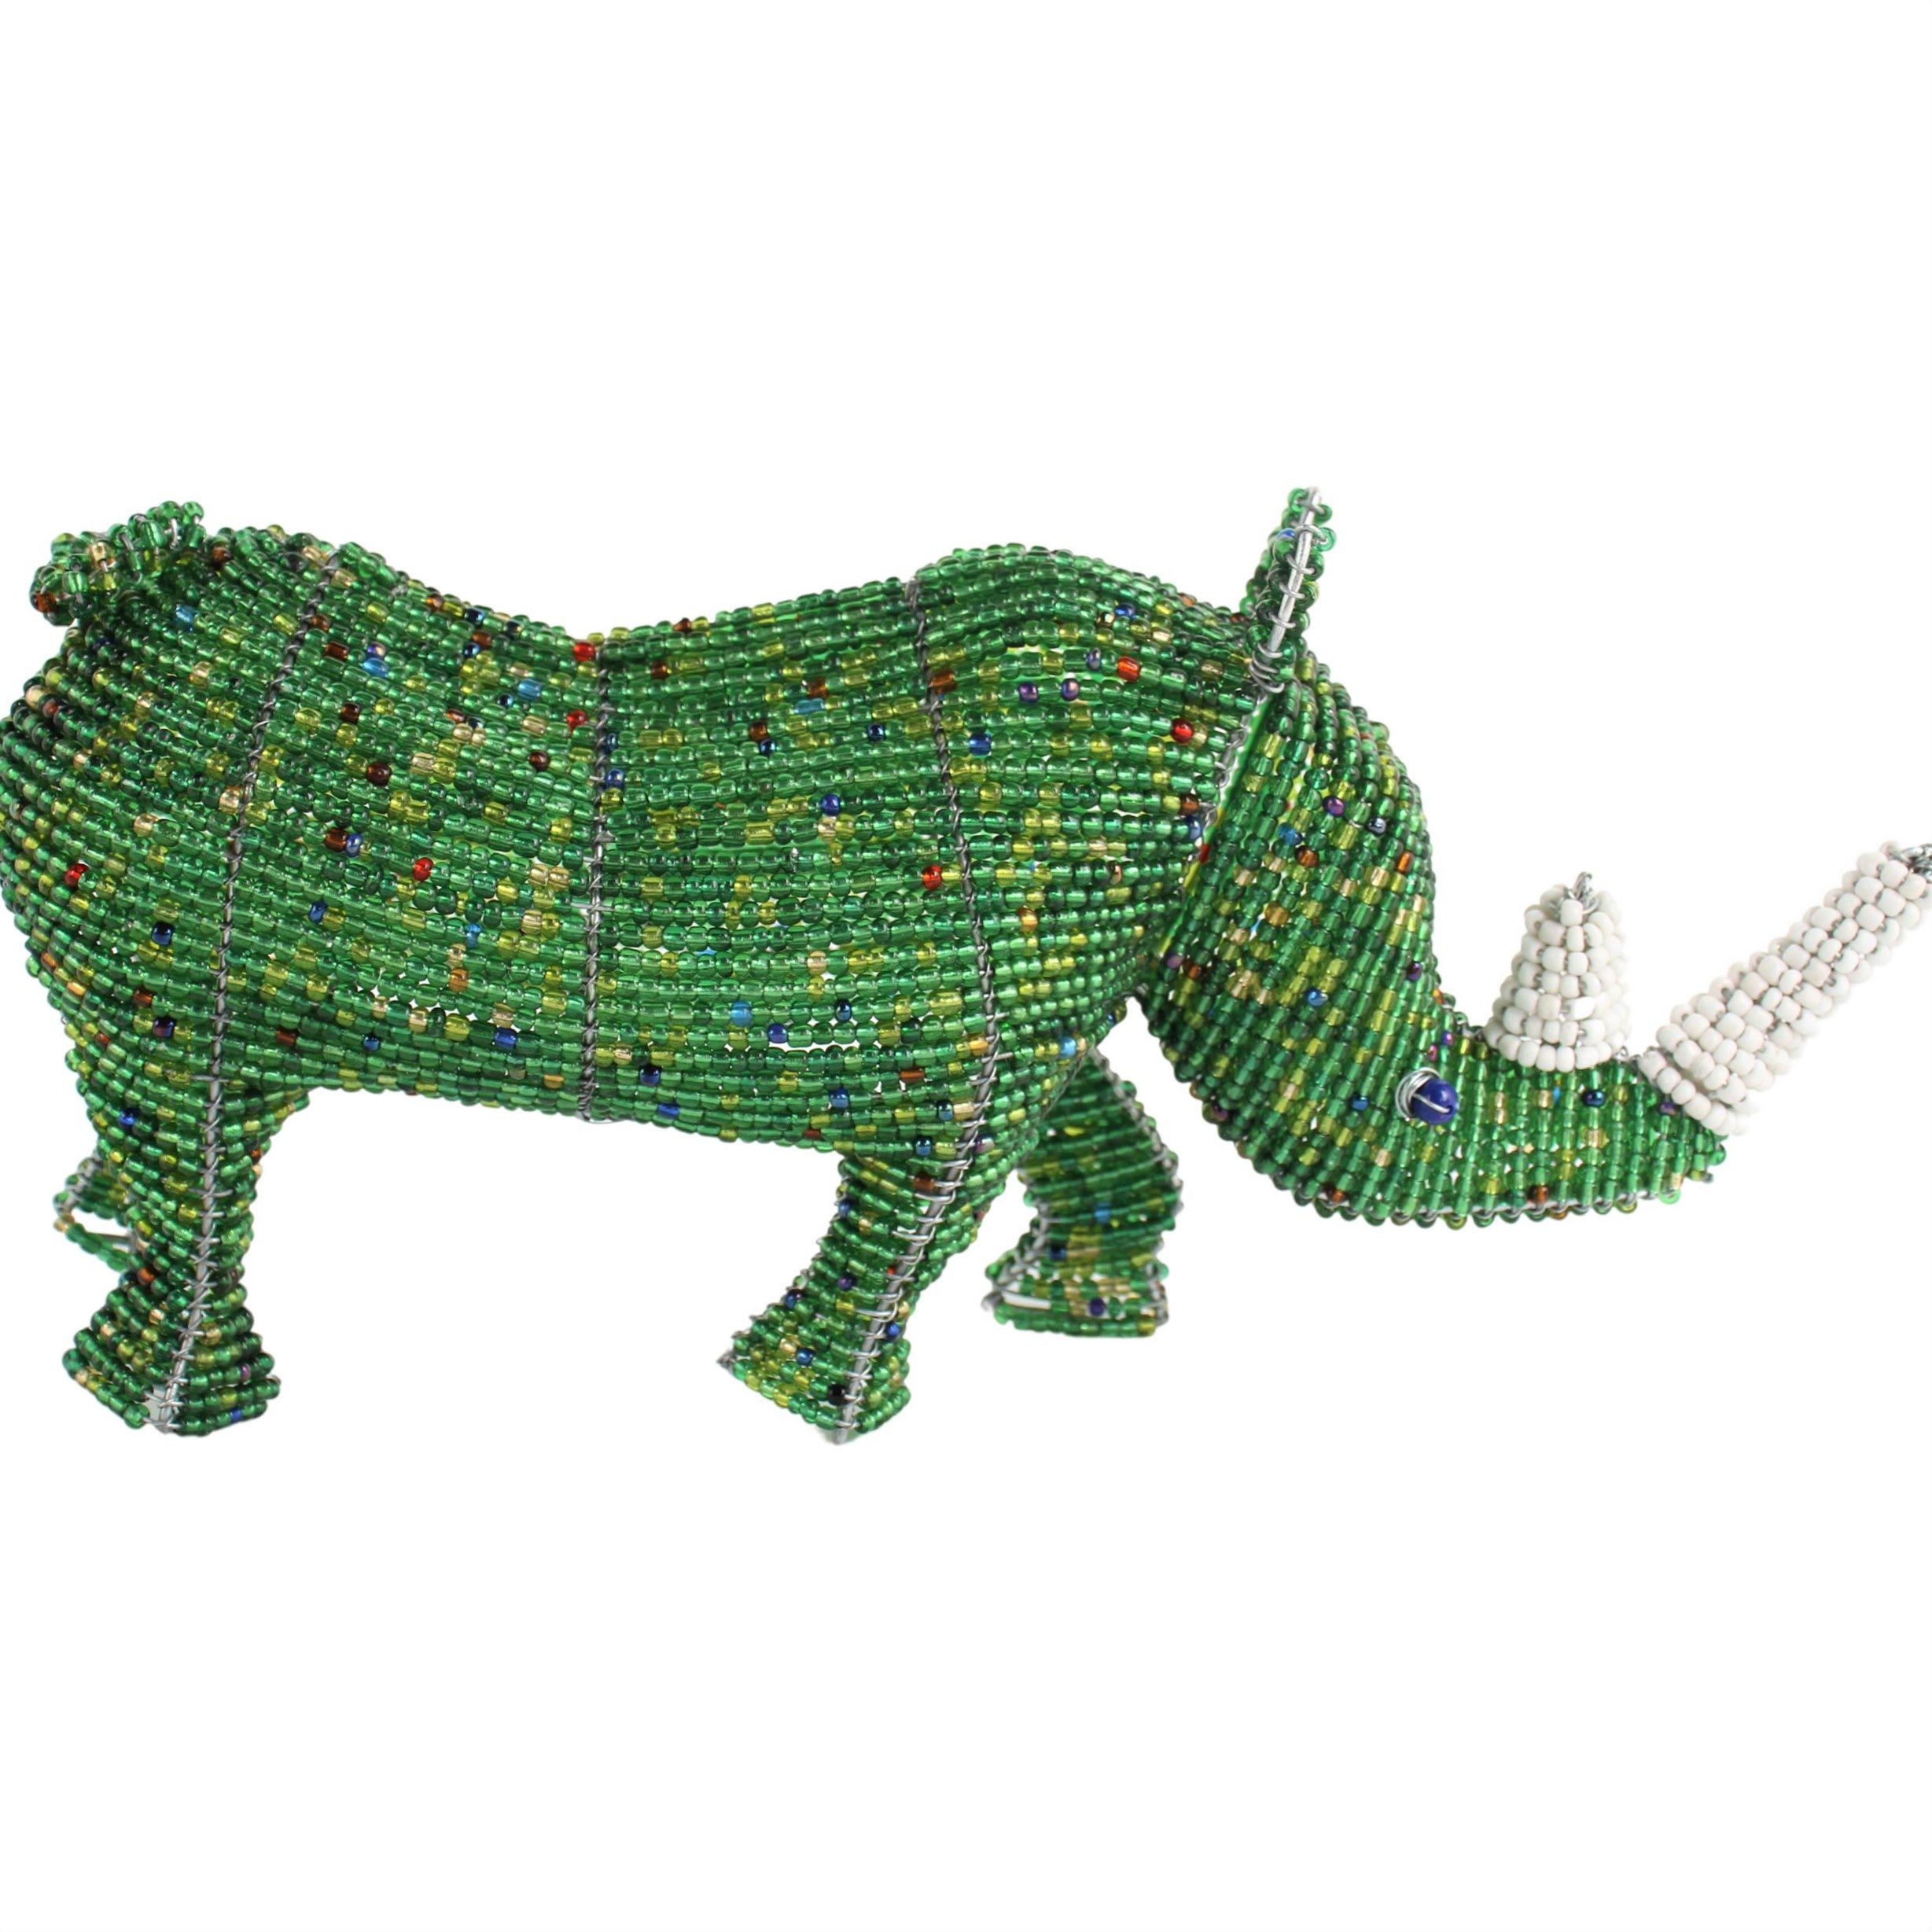 Shona Tribe Wire and Beaded Animals - Rhino ~7.1" Tall - Wire and Beaded Animals